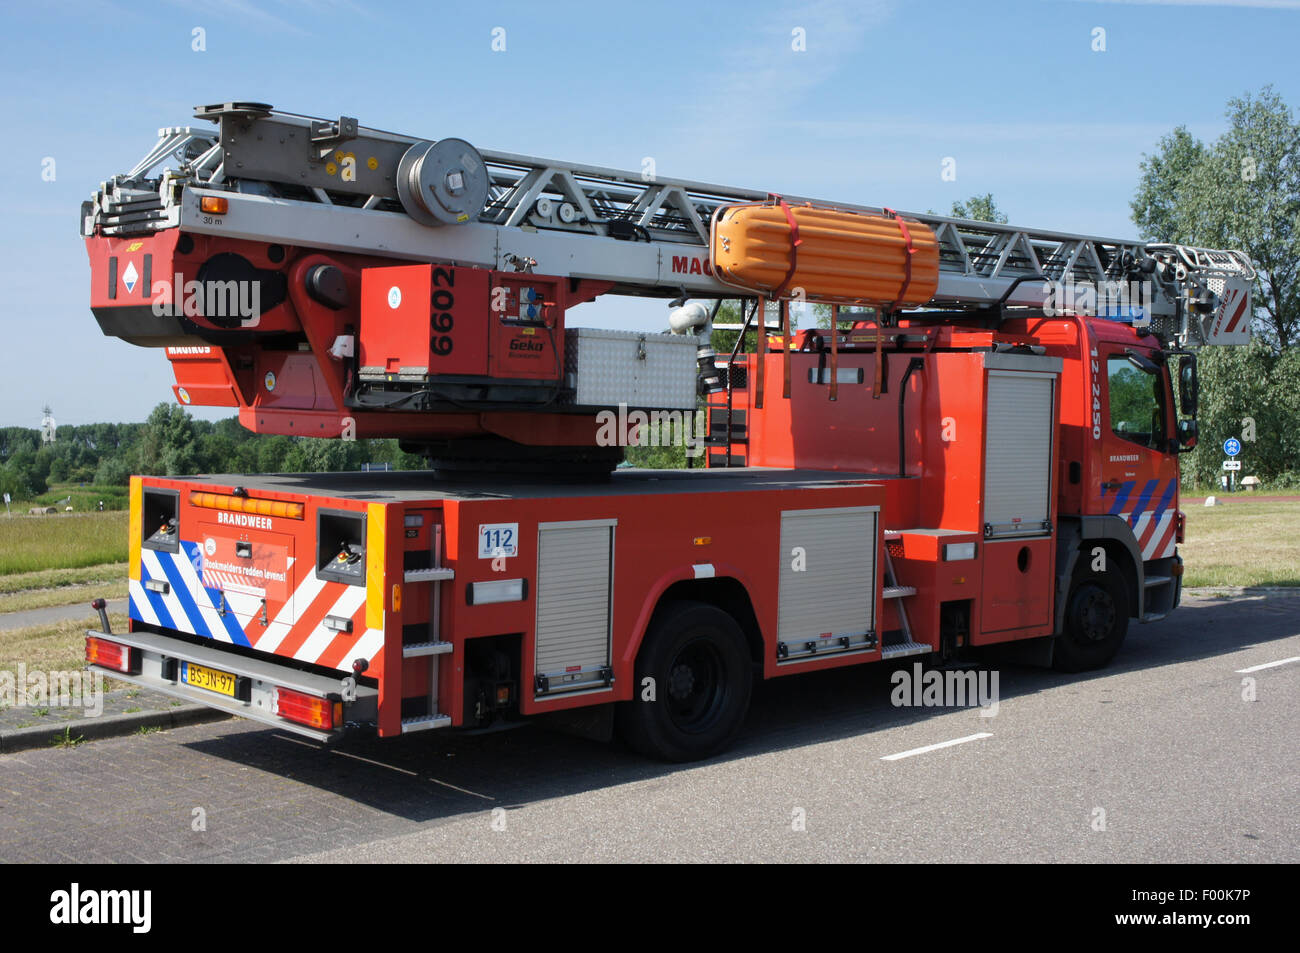 Ladderwagen Brandweer Velsen Unit 6602 Photo - Alamy